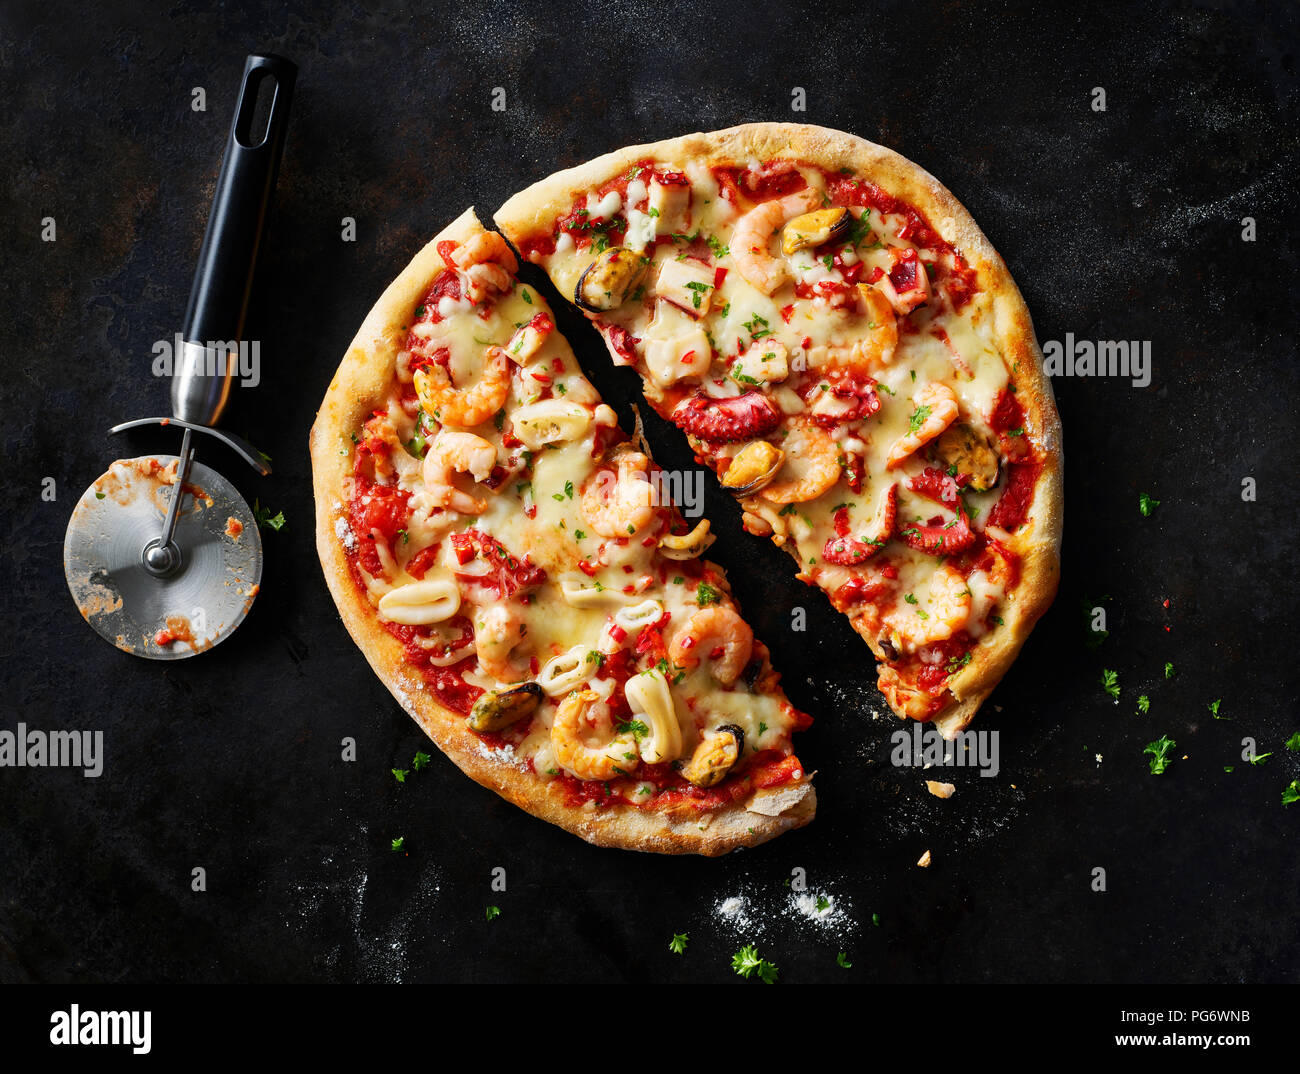 Sliced pizza with frutti di mare on dark ground Stock Photo